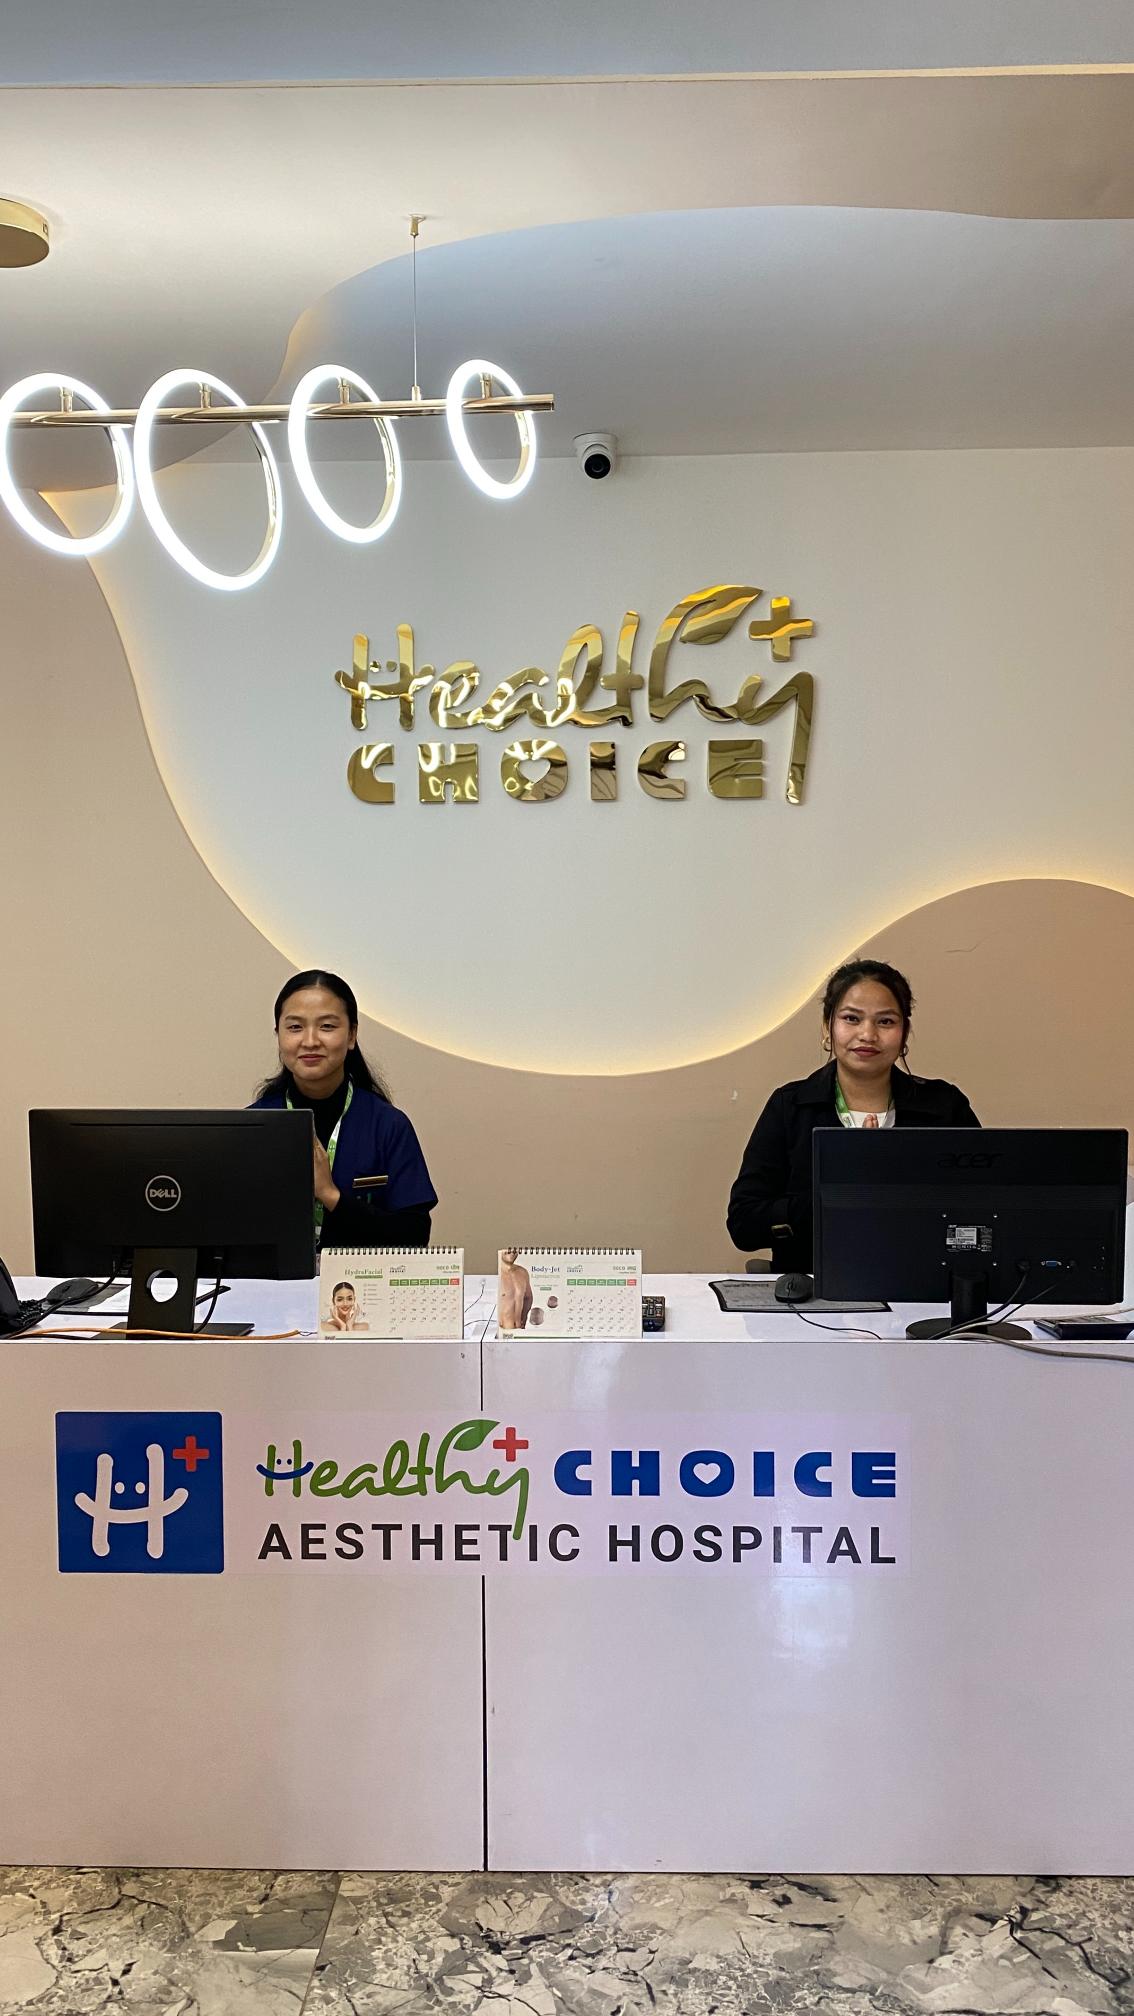 healthy choice aesthetic hospital reception